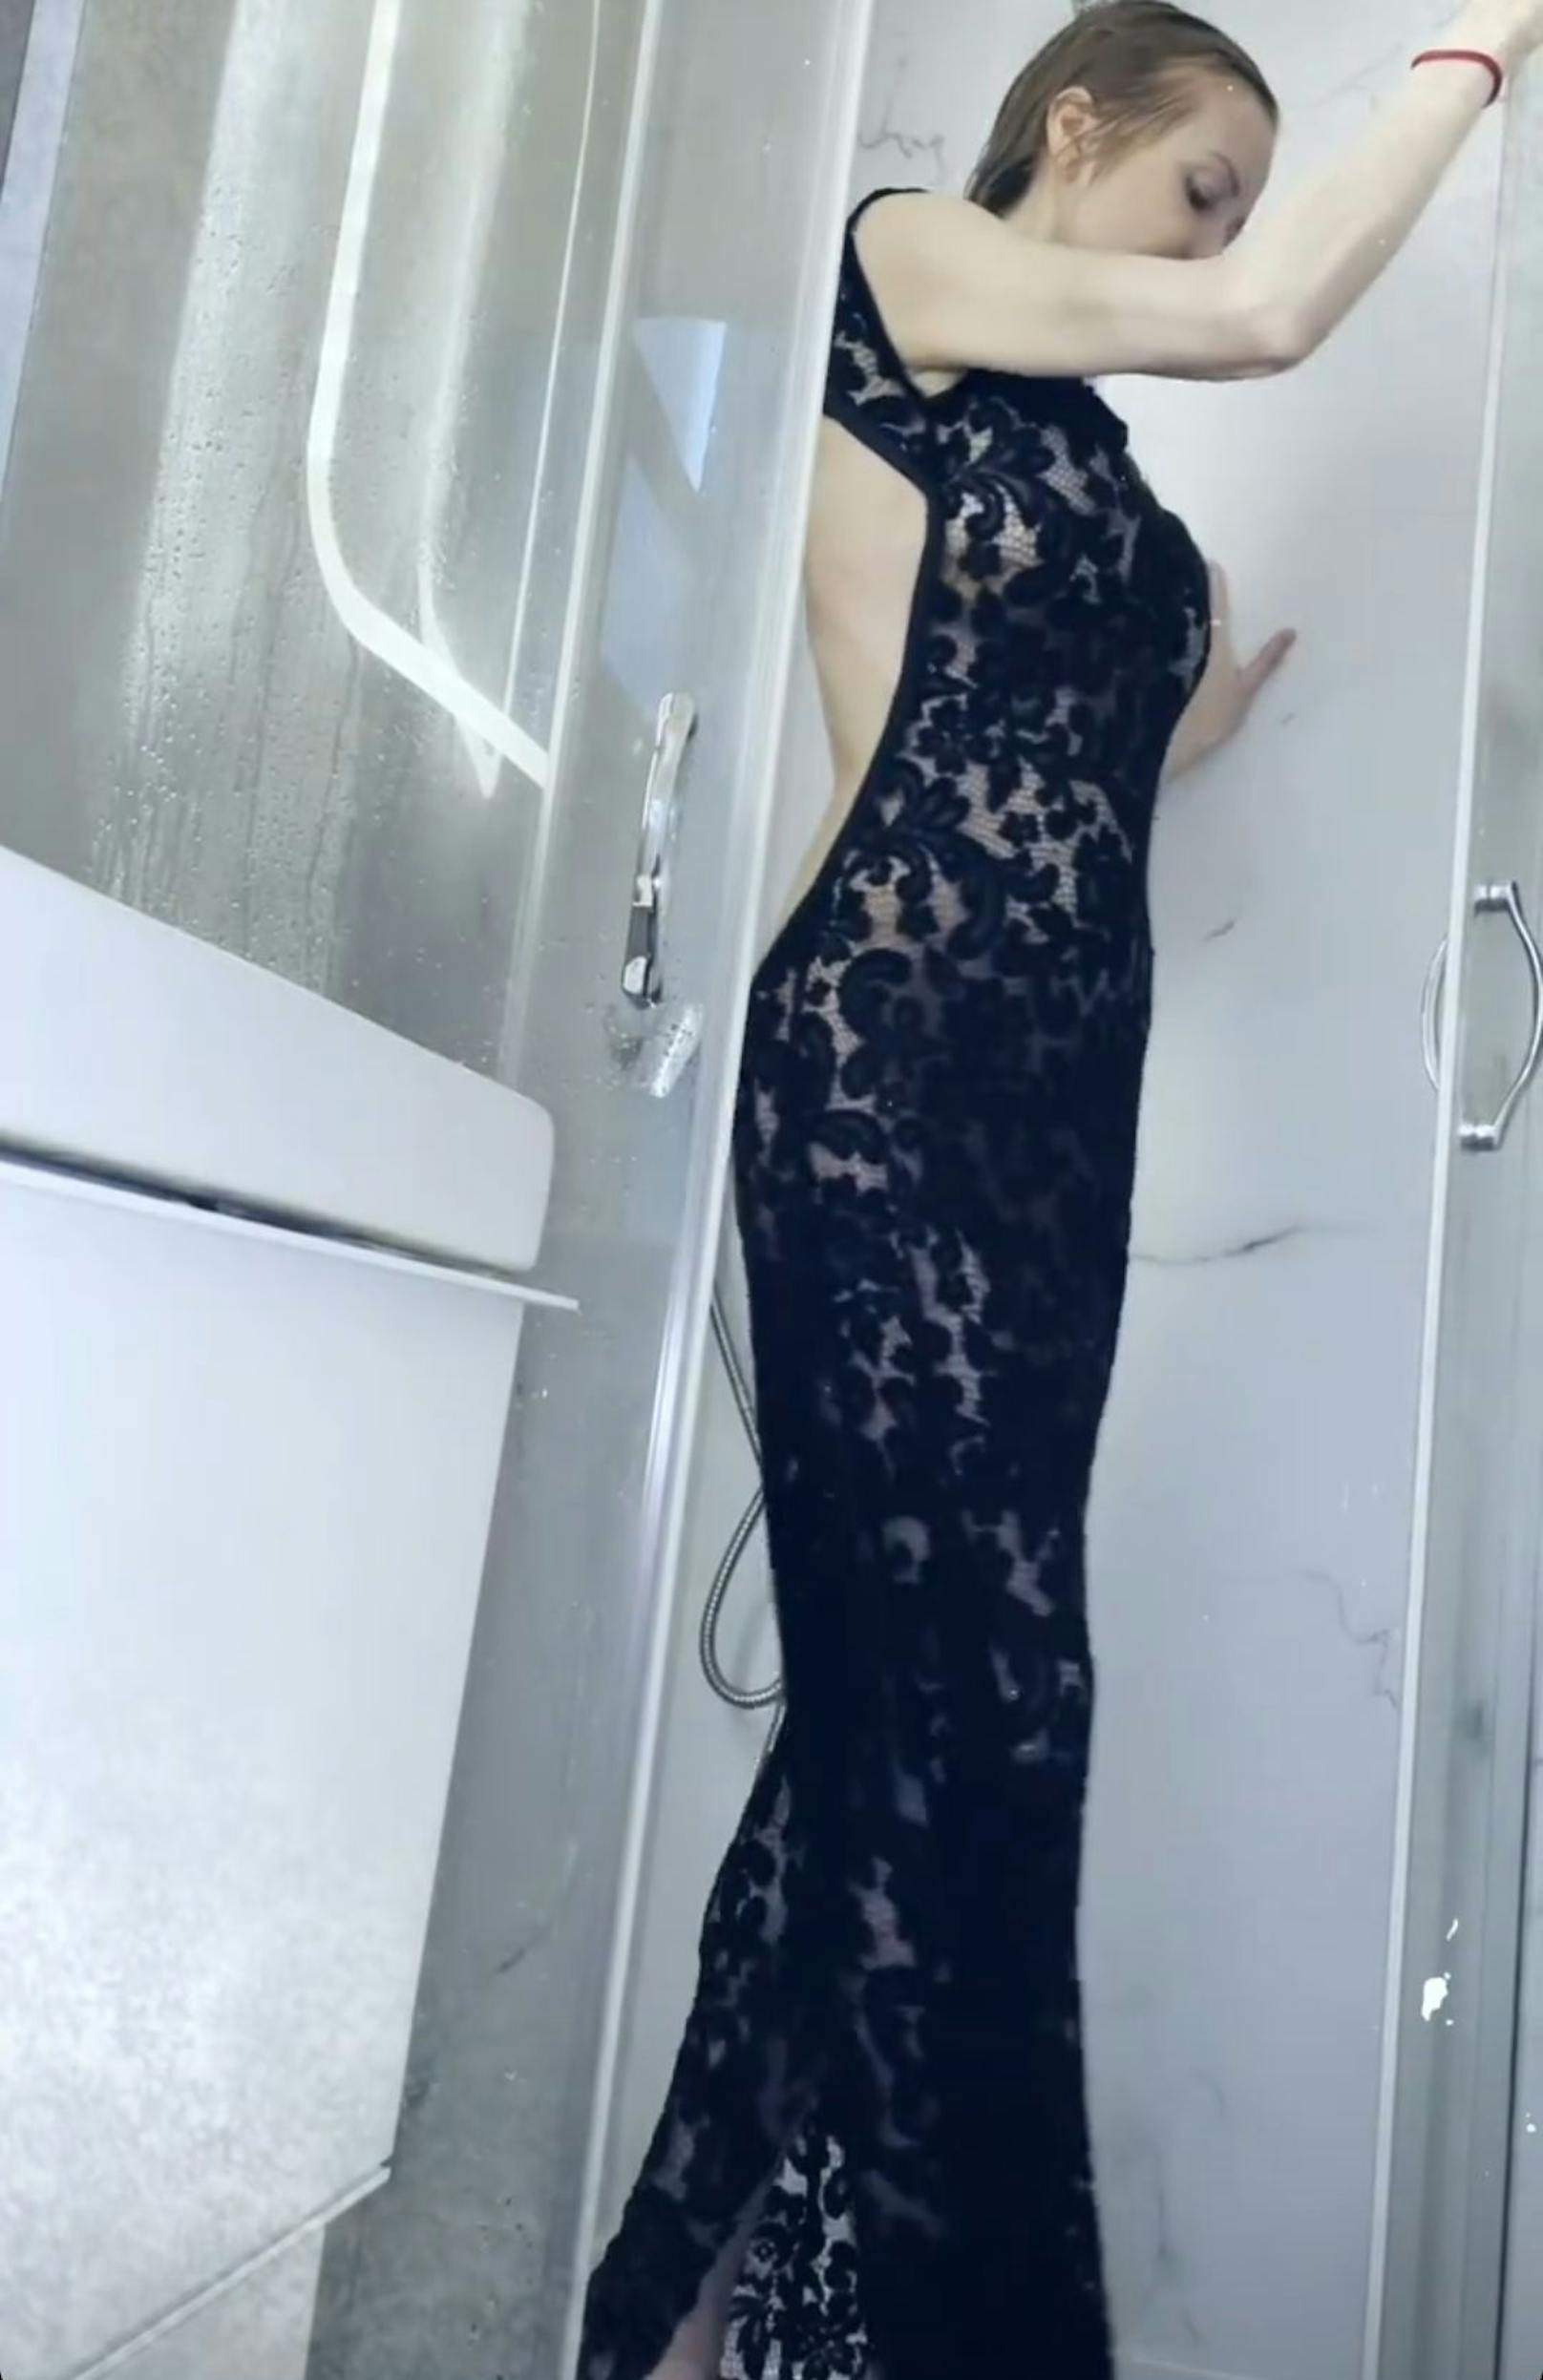 Für ihre Instagram-Follower duscht Karina Sarkissova im Abendkleid.